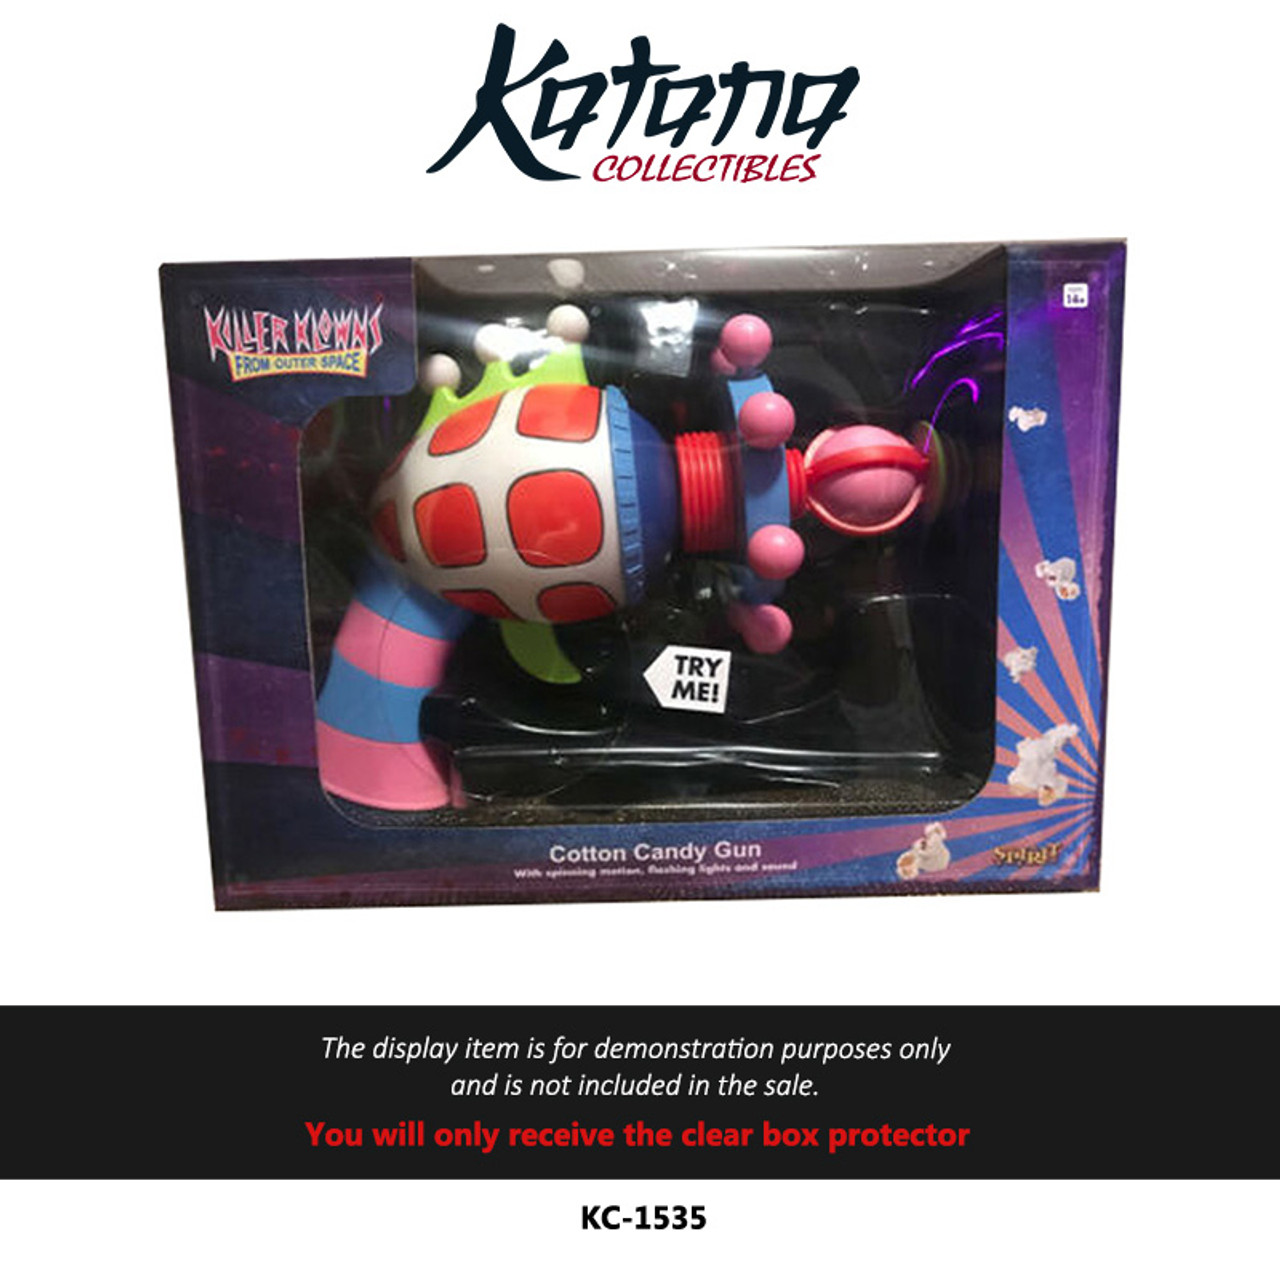 Katana Collectibles Protector For Killer Klowns Cotton Candy Gun